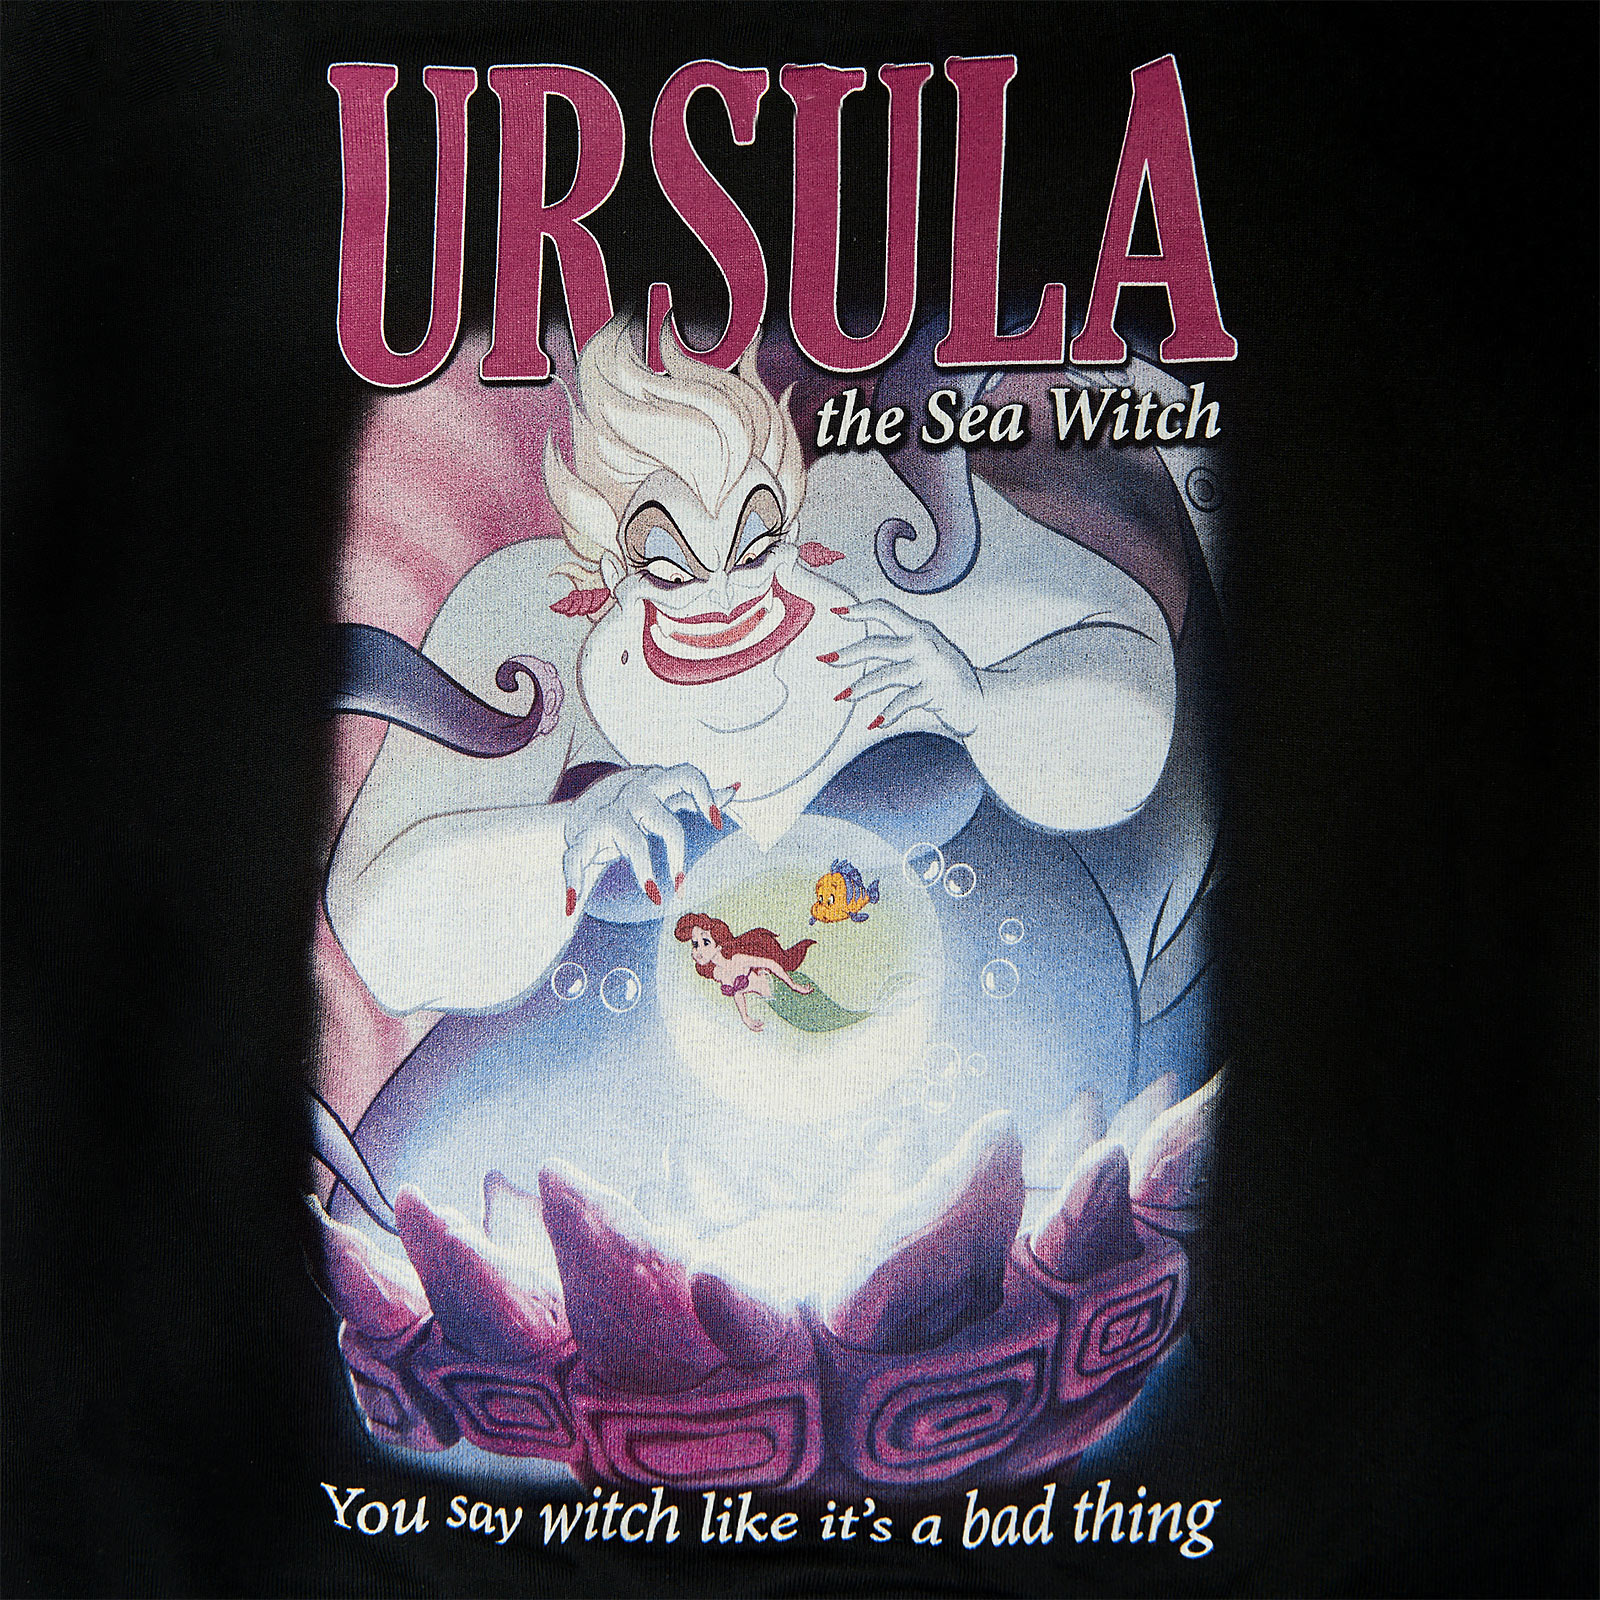 Arielle - Ursula Sea Witch Sweater Damen schwarz